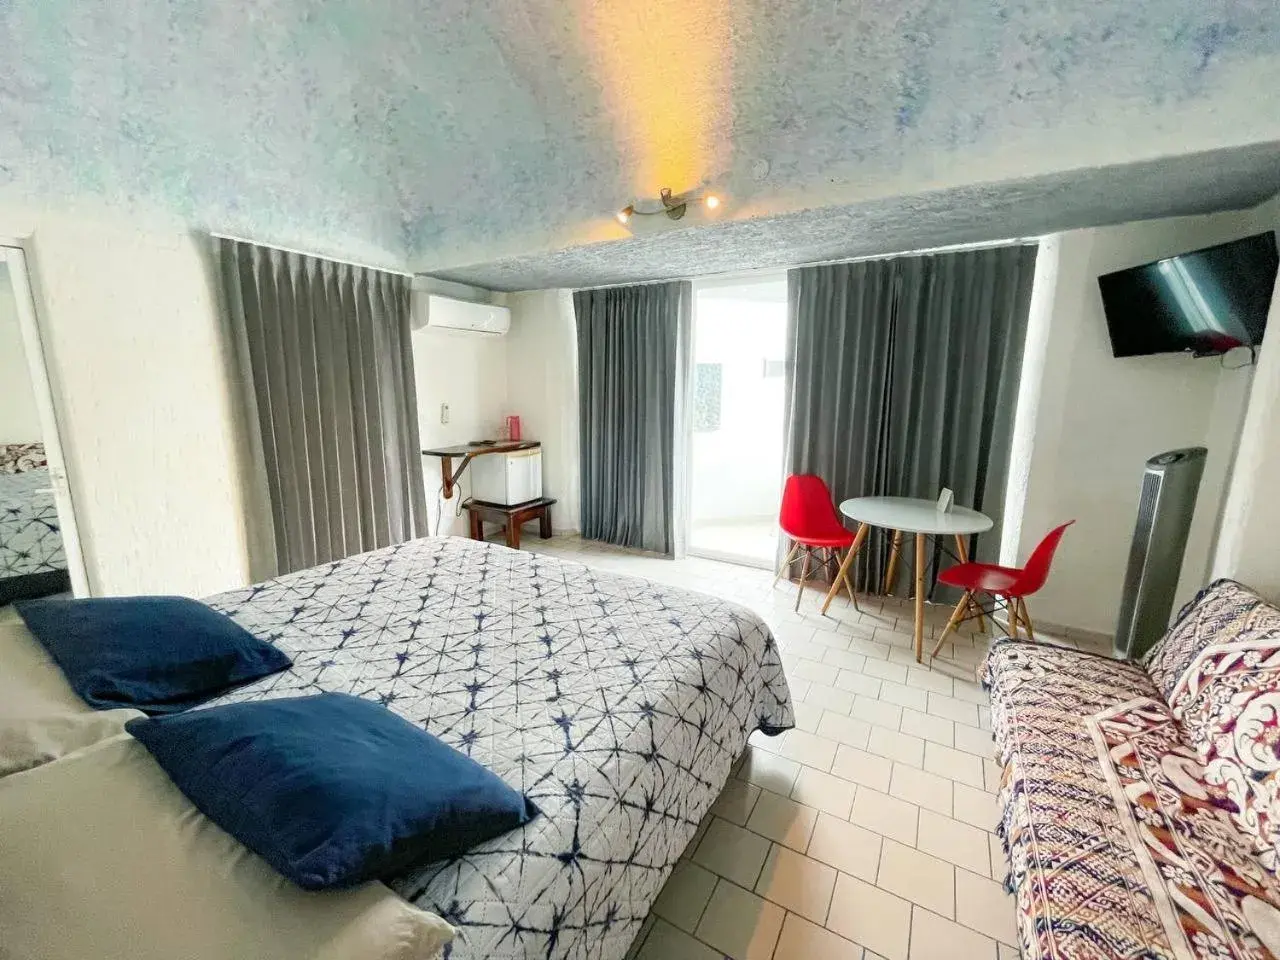 Bedroom in Hotel Allende